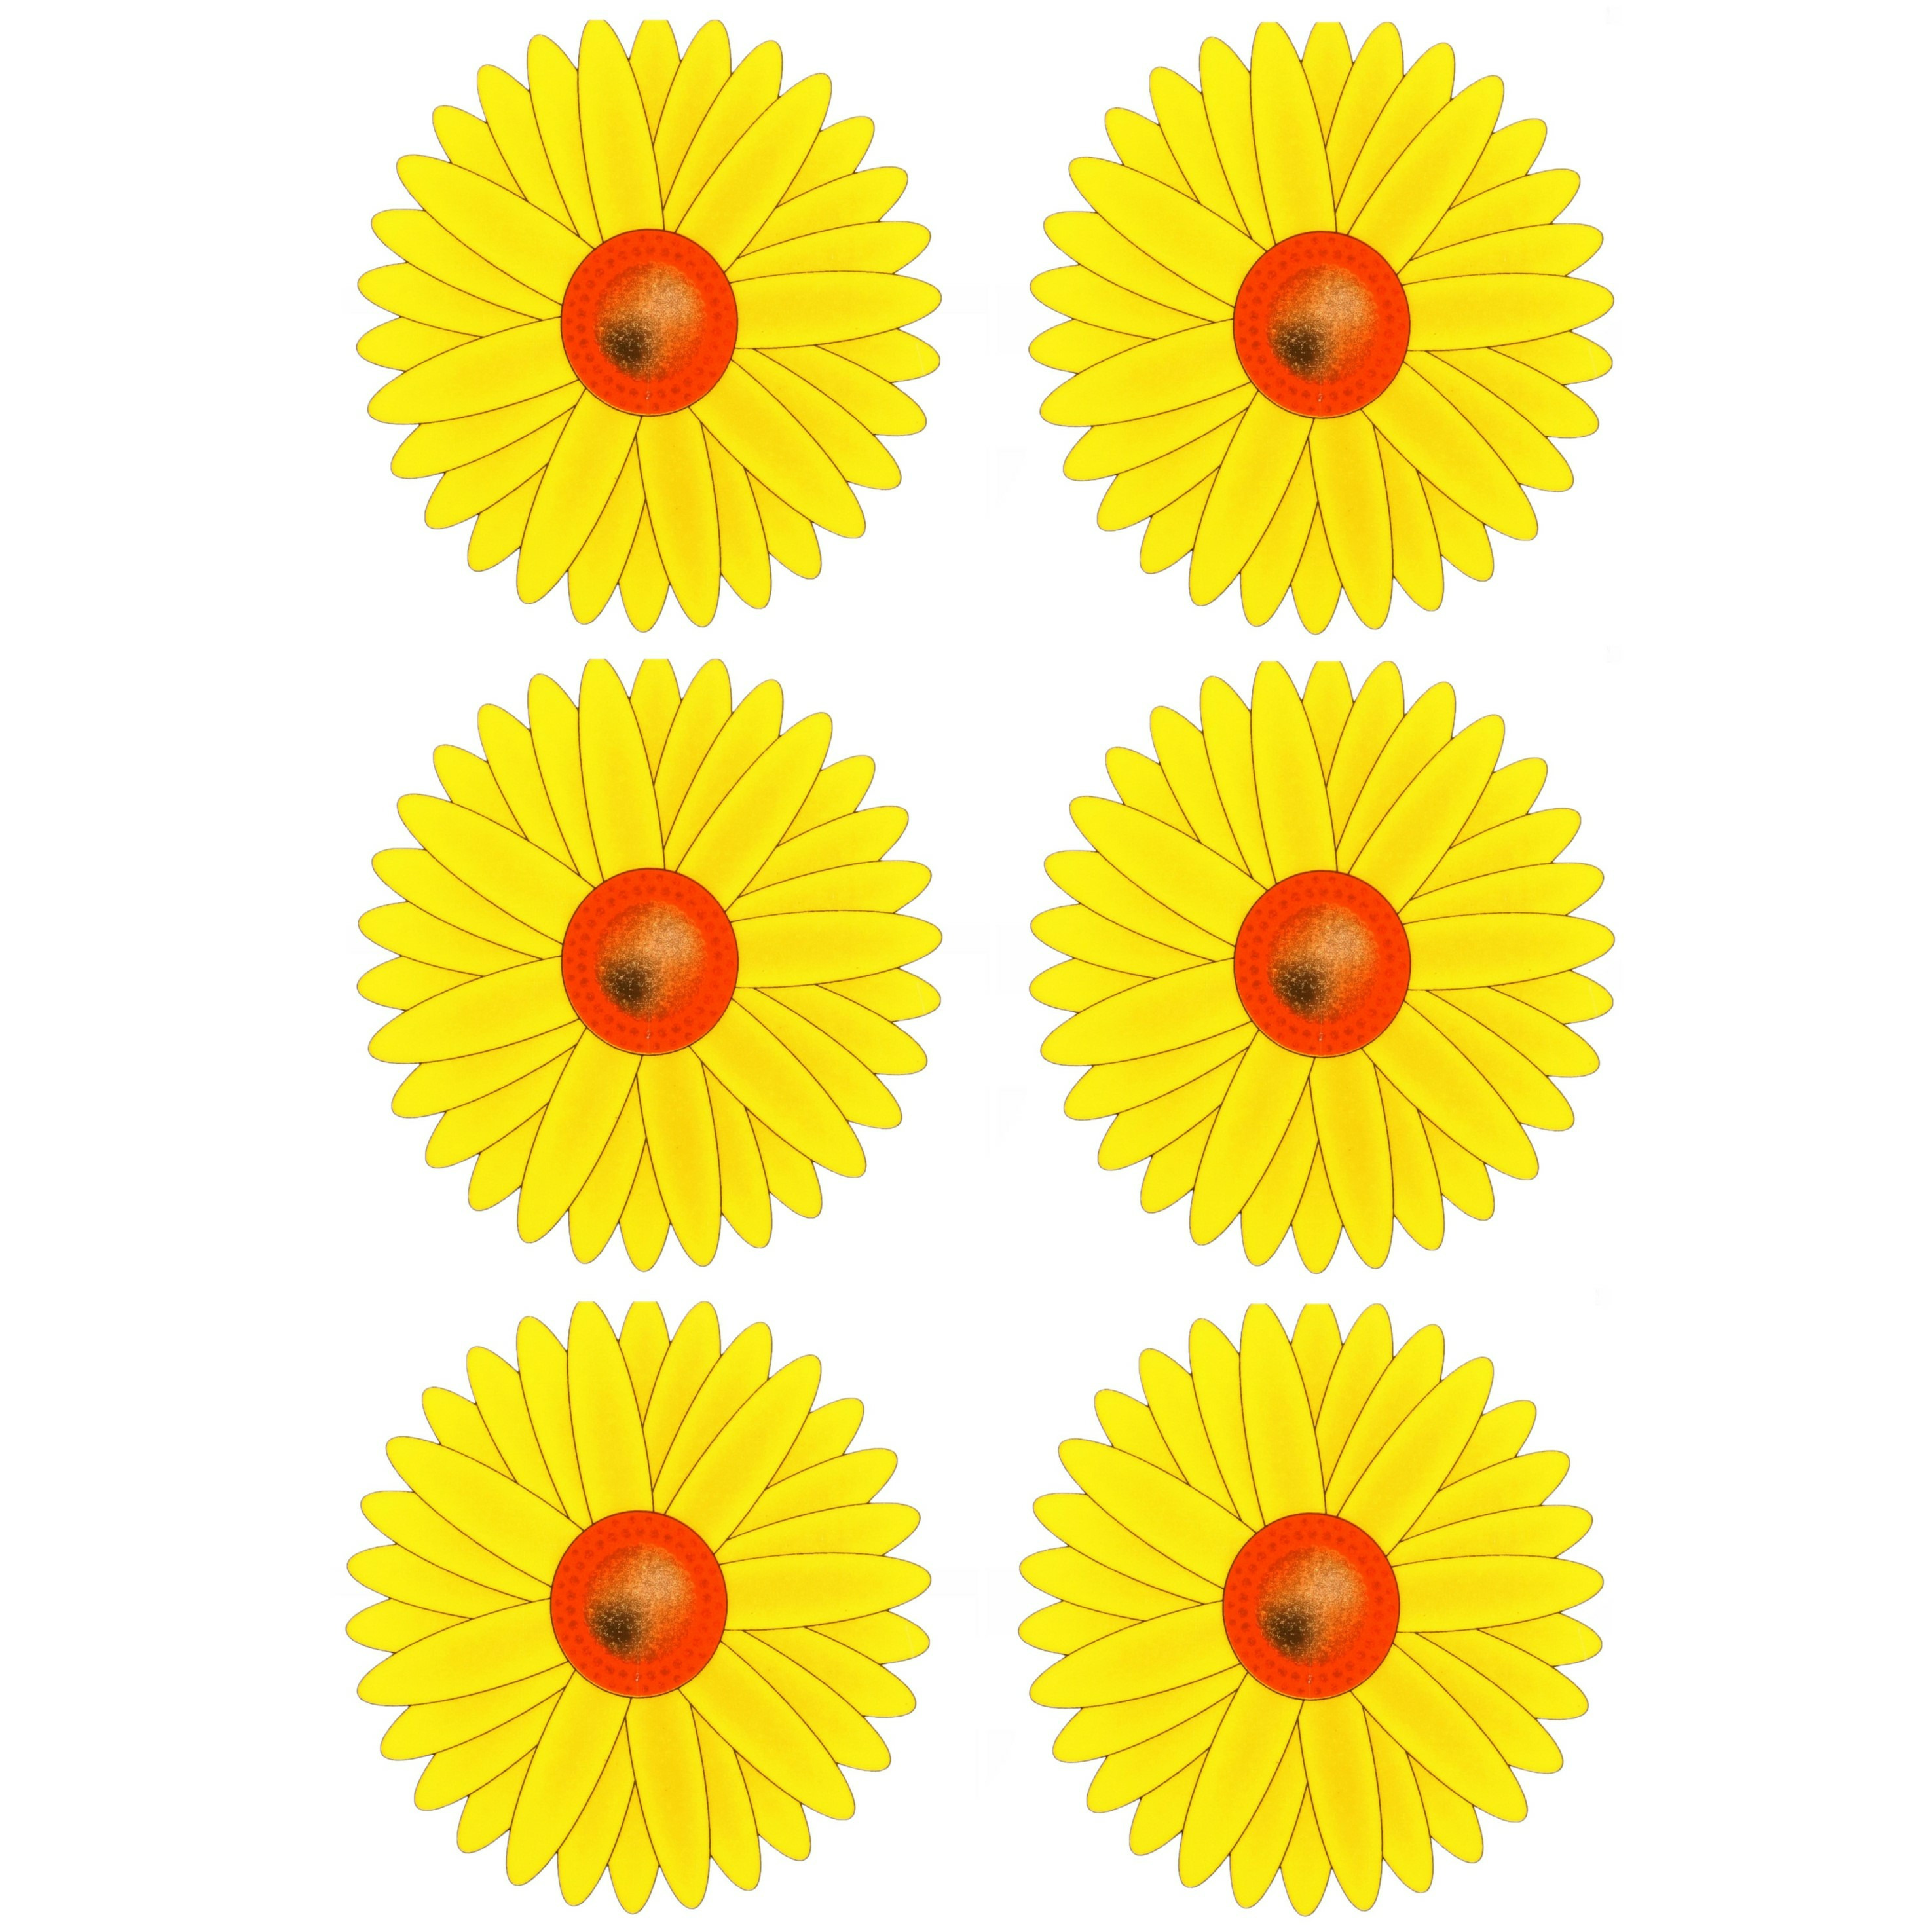 Fruitvliegjes val zonnebloem raamsticker 6x stickers geel diameter 8,5 cm